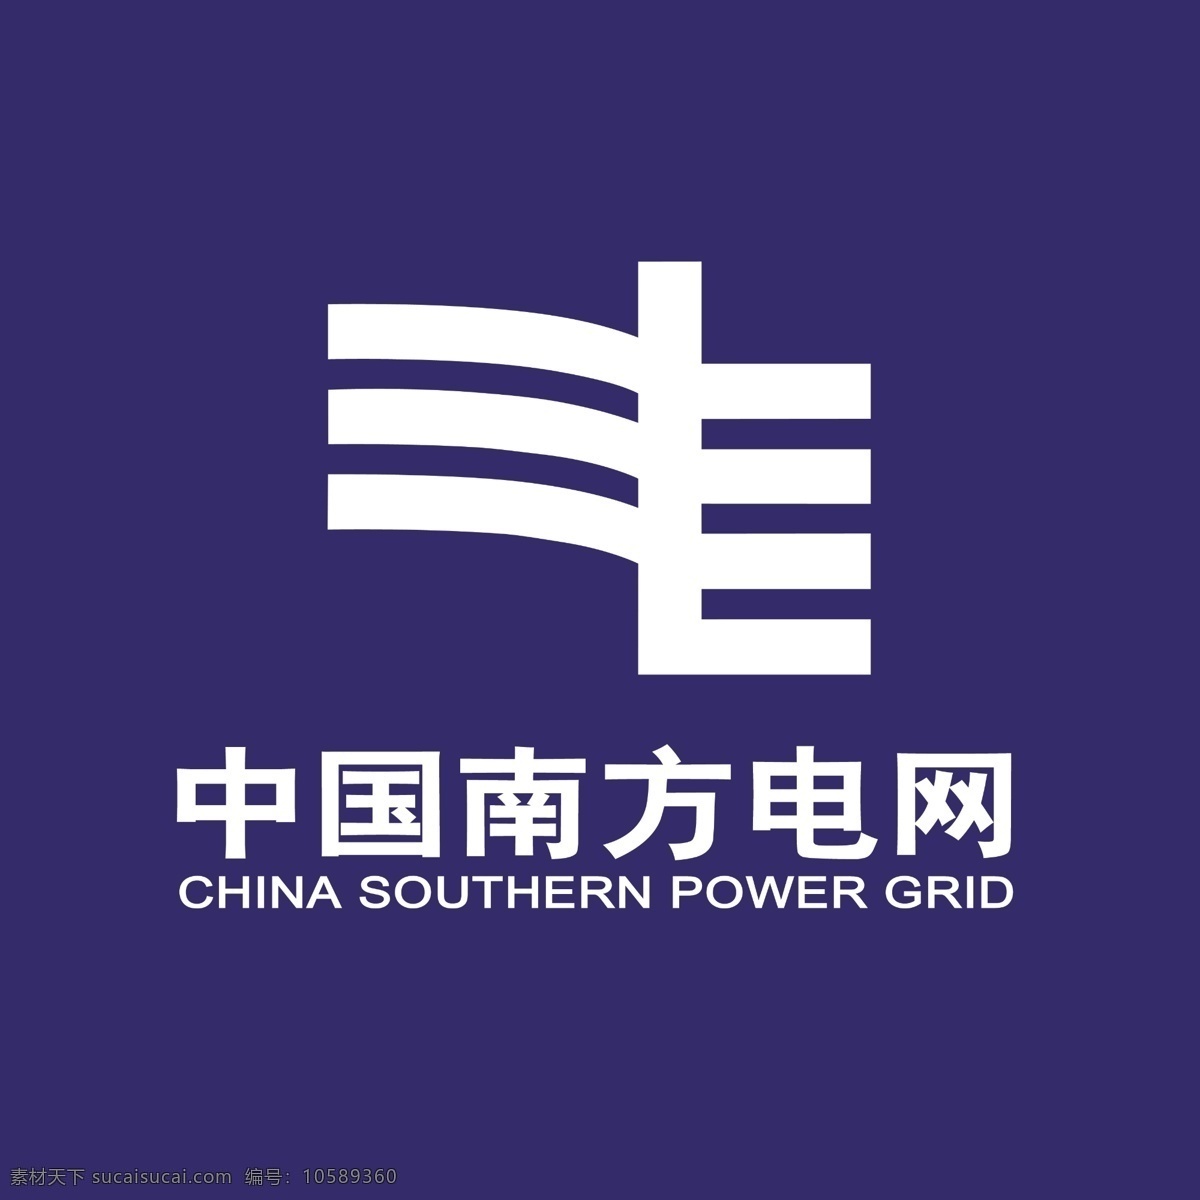 中国 南方 电网 正面 中国电网 南方电网 中国南方电网 南方电网标志 电网标志 标志图标 企业 logo 标志